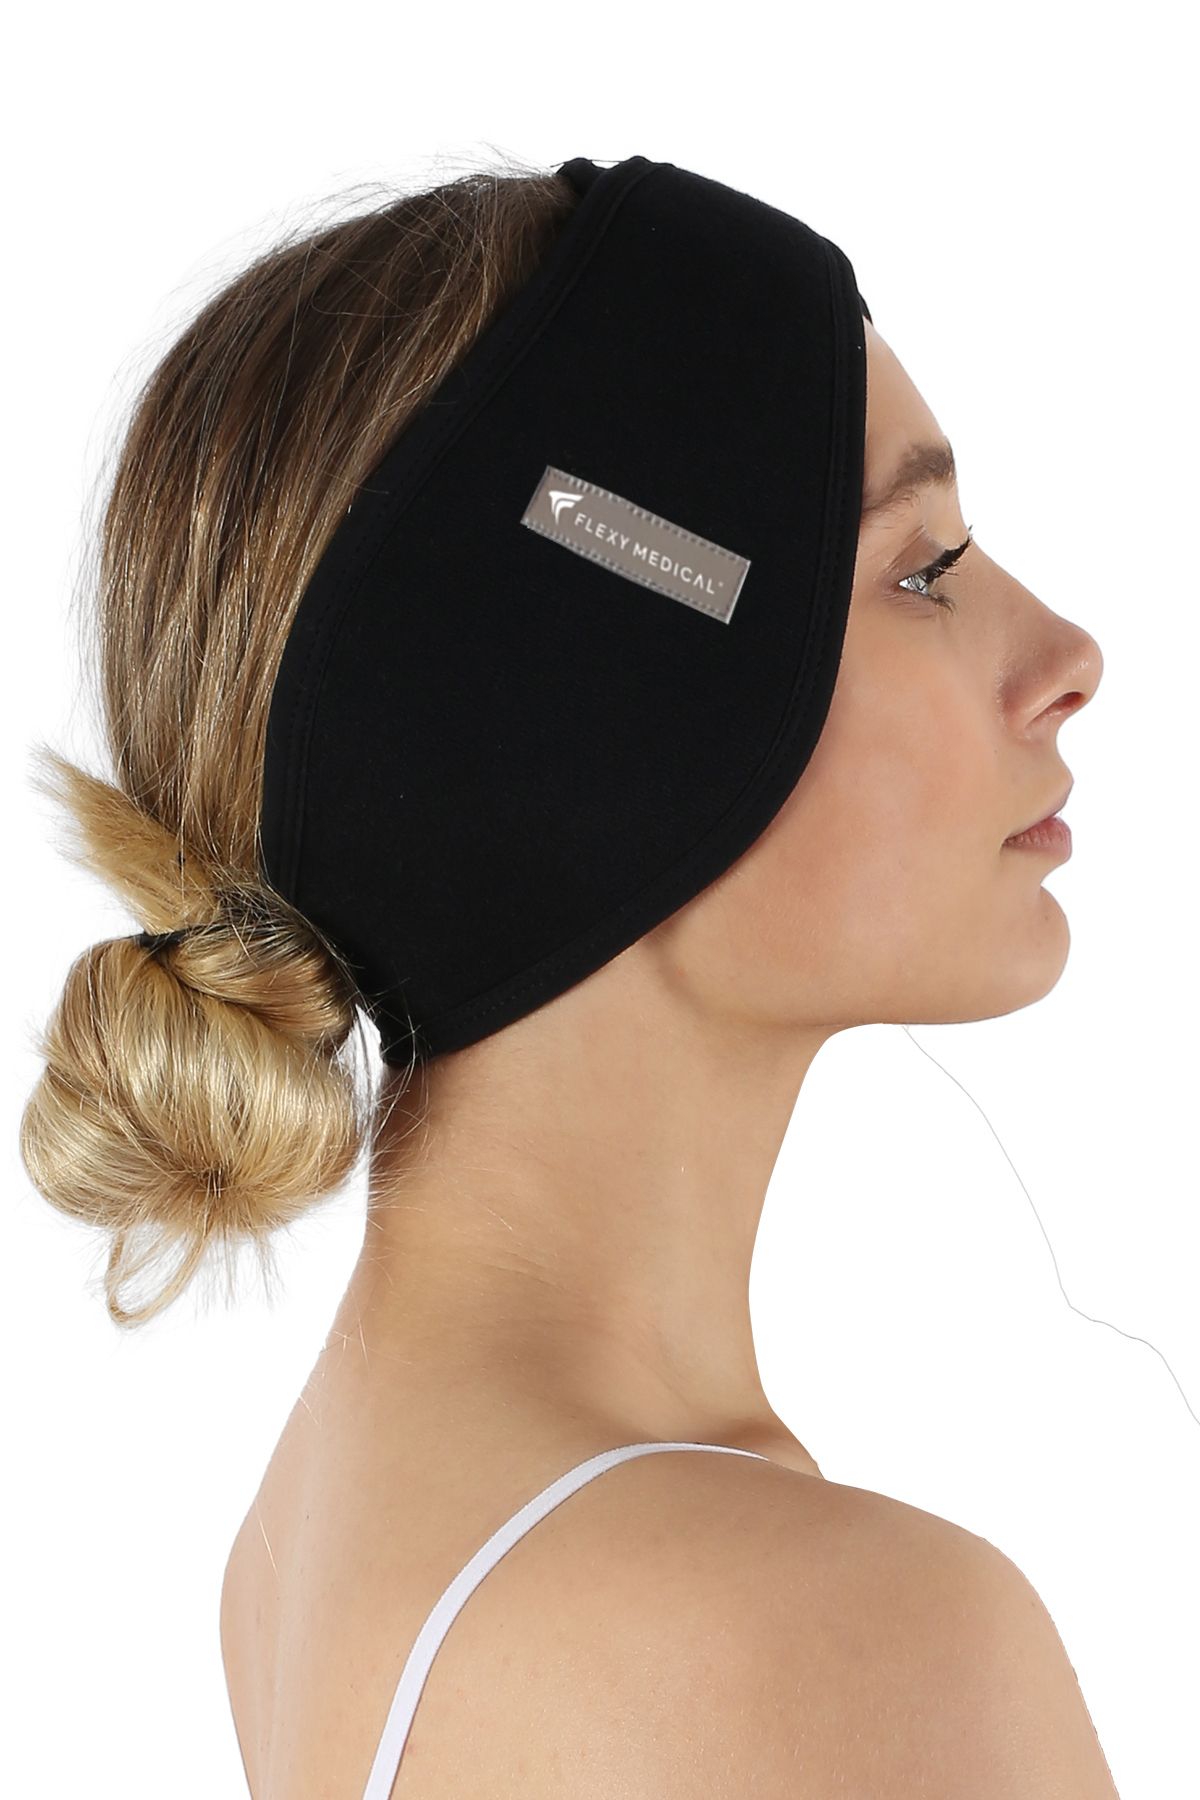 Flexy Medical Kepçe Kulak Bandajı - Kulak Düzleştirmede Faydalı - Kulak Ağrısını Rahatlatır, Sporcu Koruma Sağlar